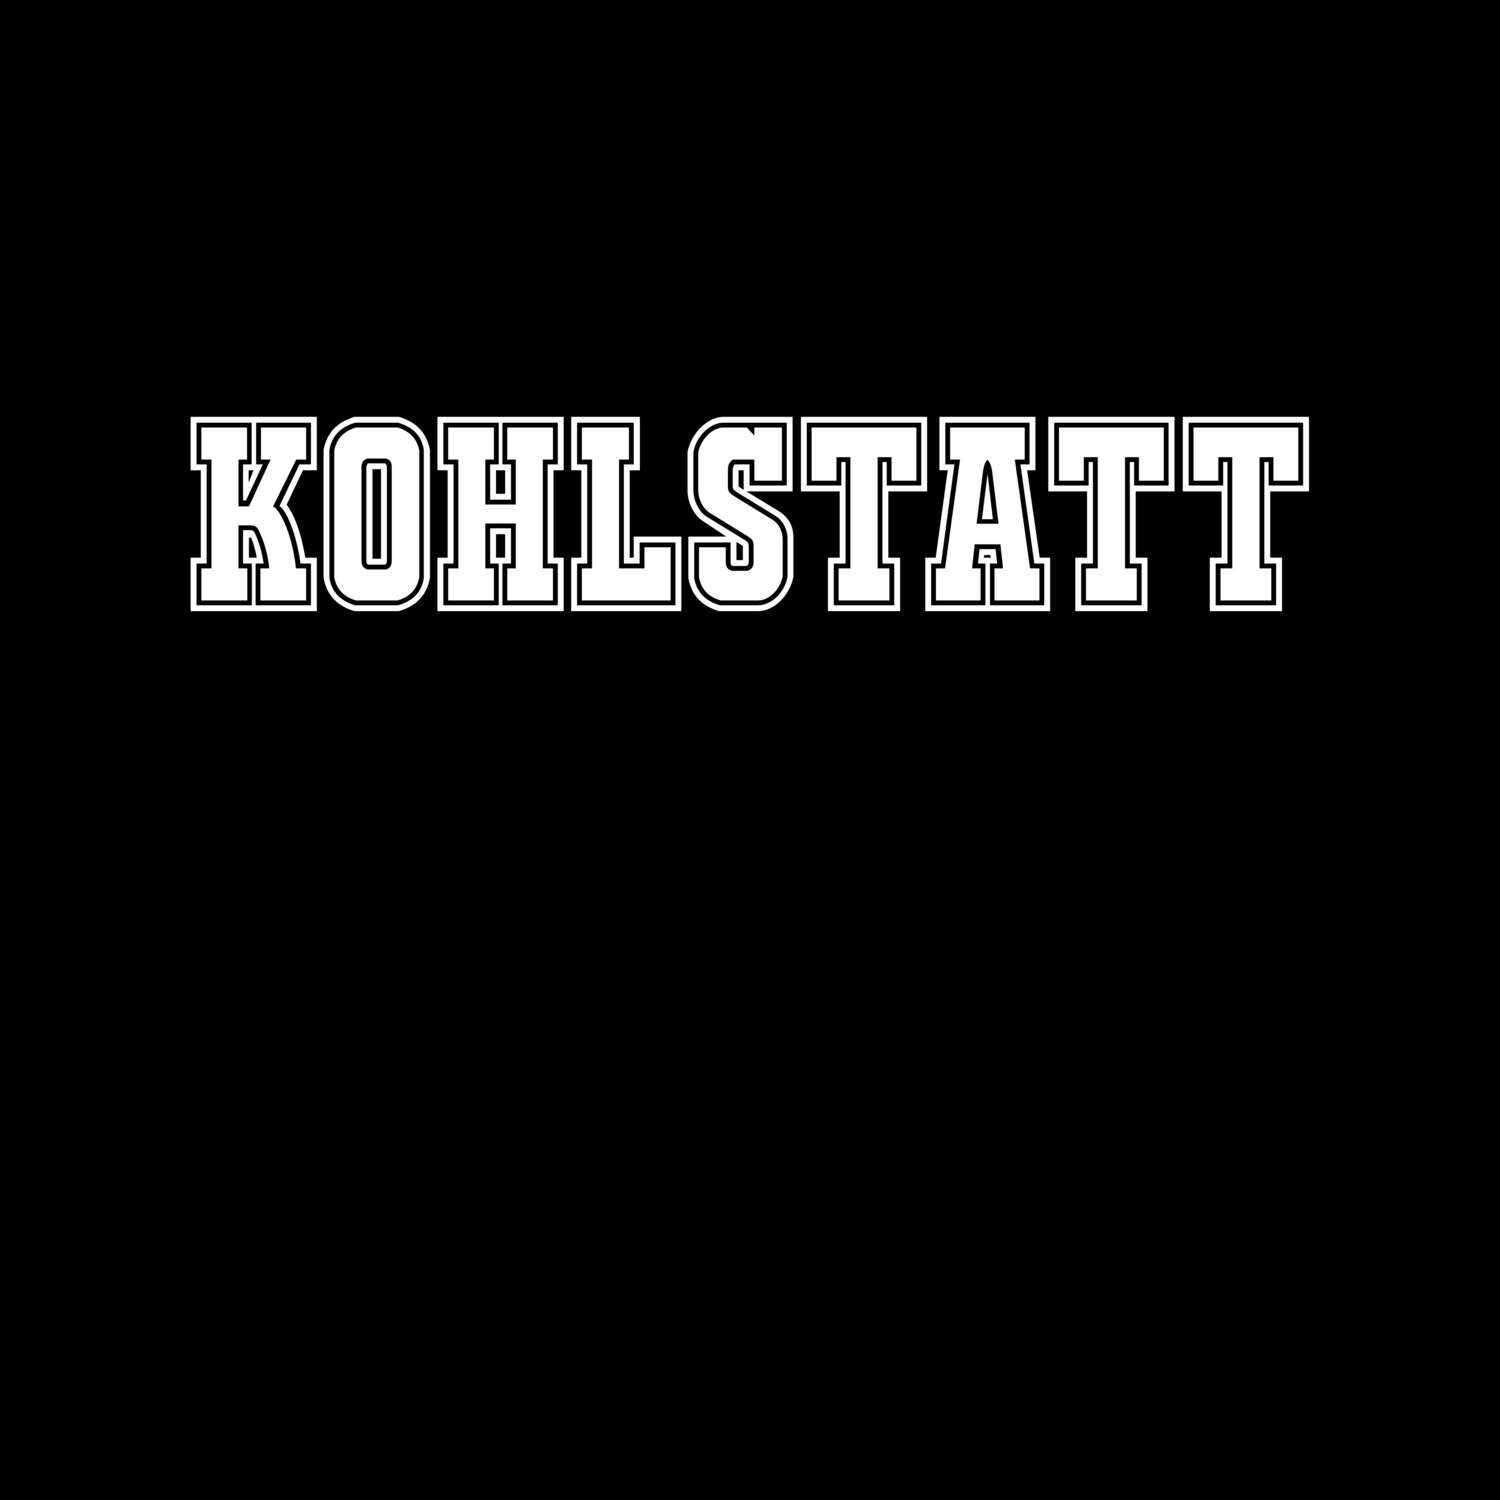 Kohlstatt T-Shirt »Classic«